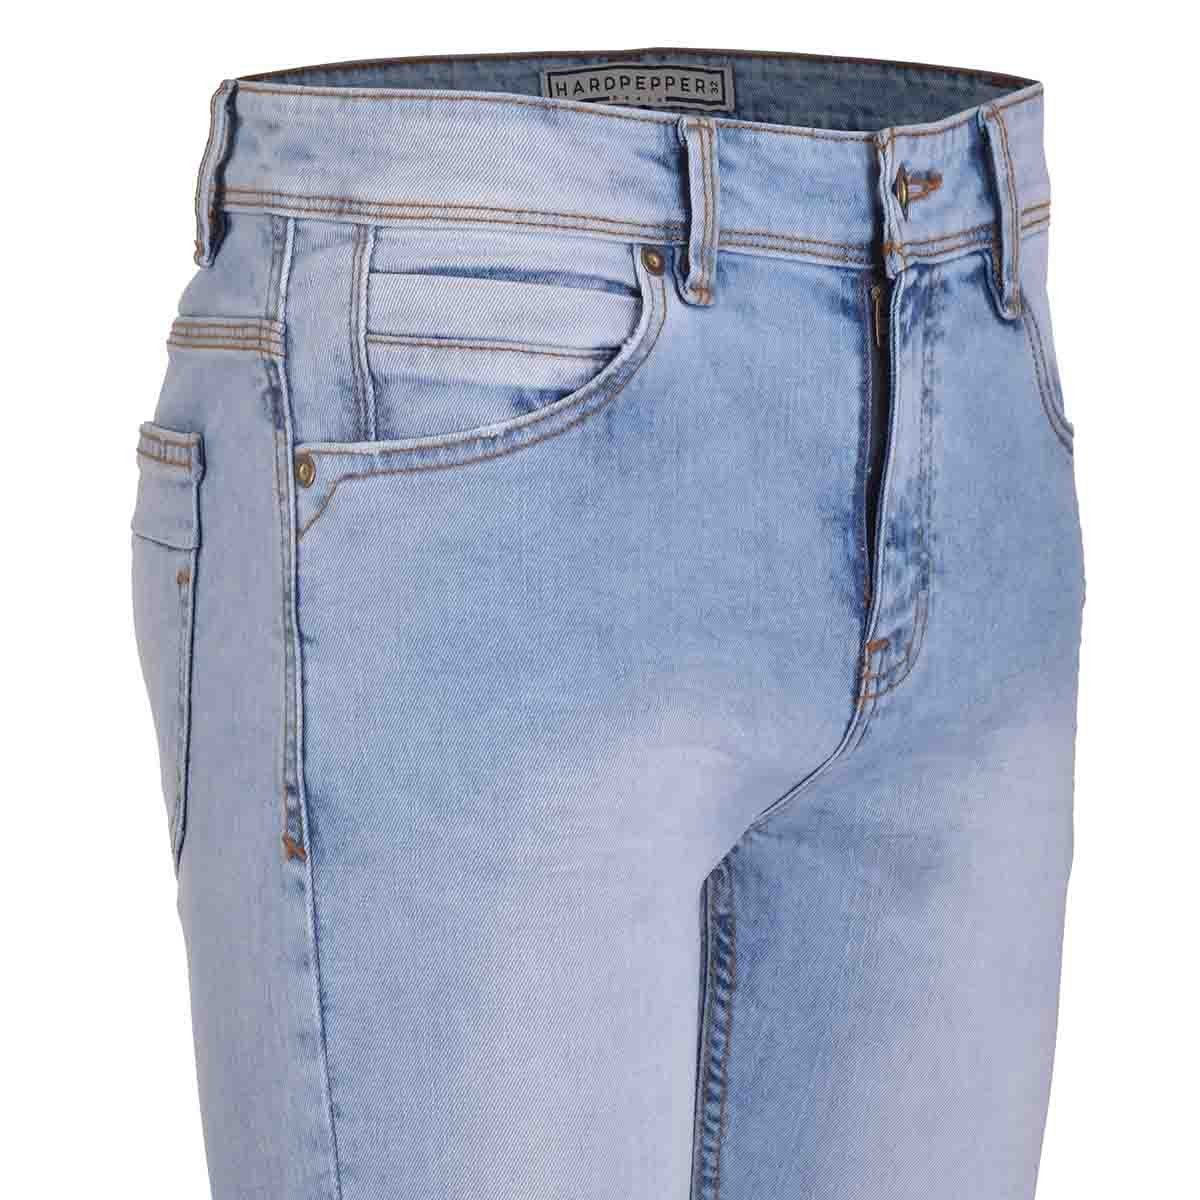 Jeans Skiny con Pinza en Bolsas Hardpepper para Caballero